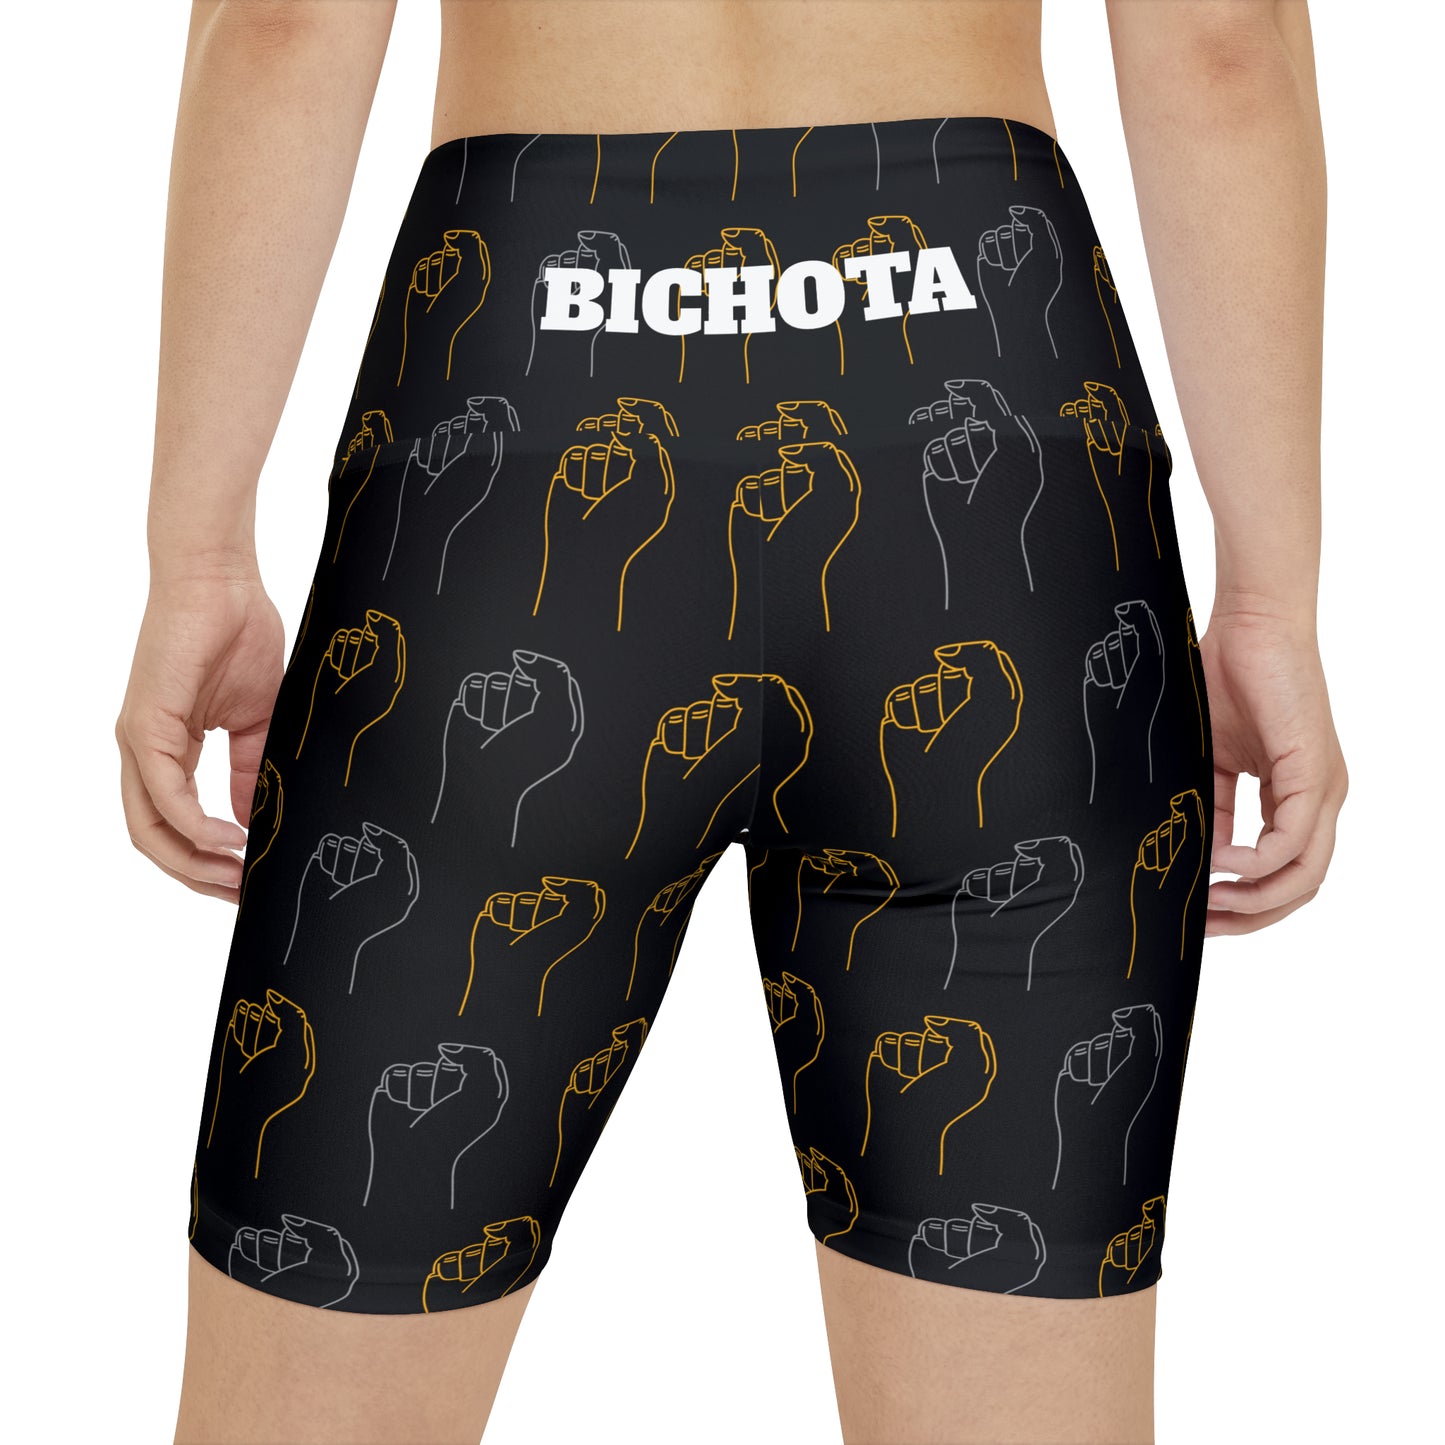 BICHOTA Workout Shorts